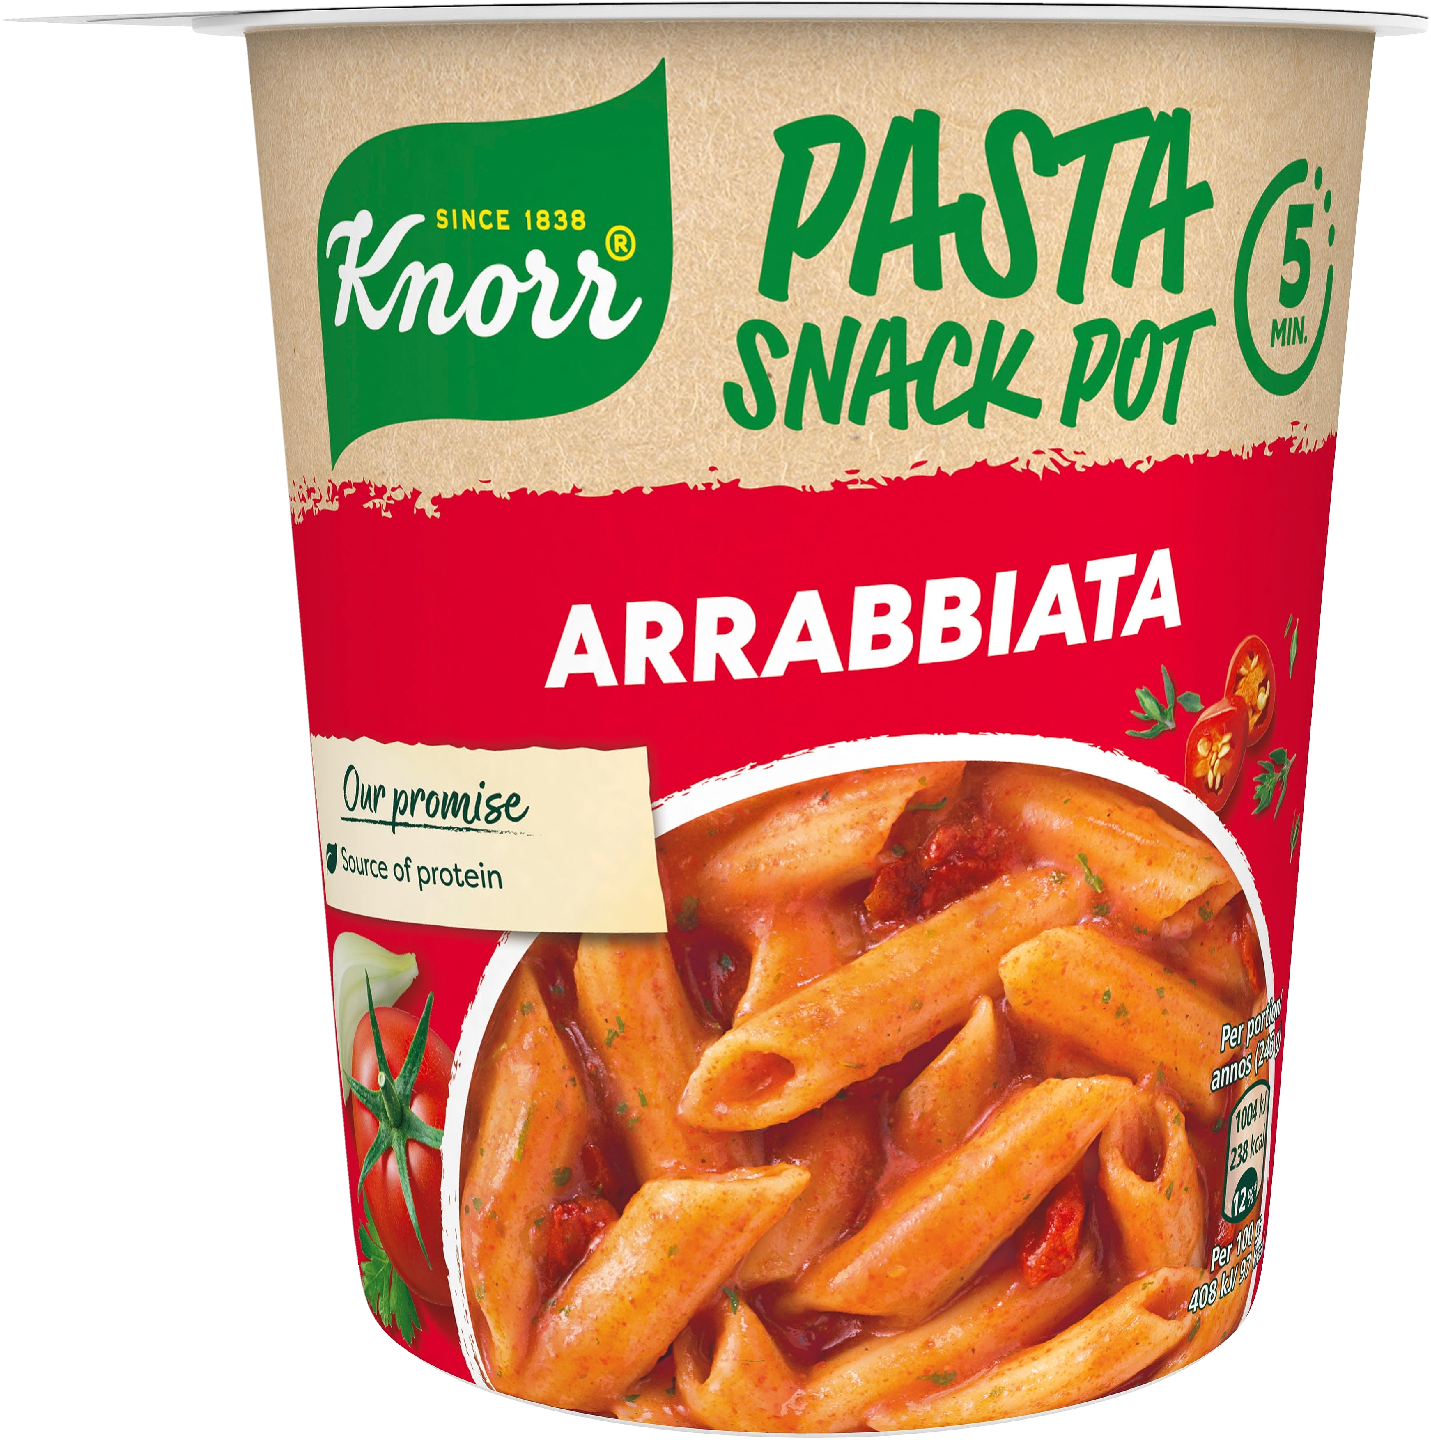 Knorr Snack Pot Arrabbiata 66g